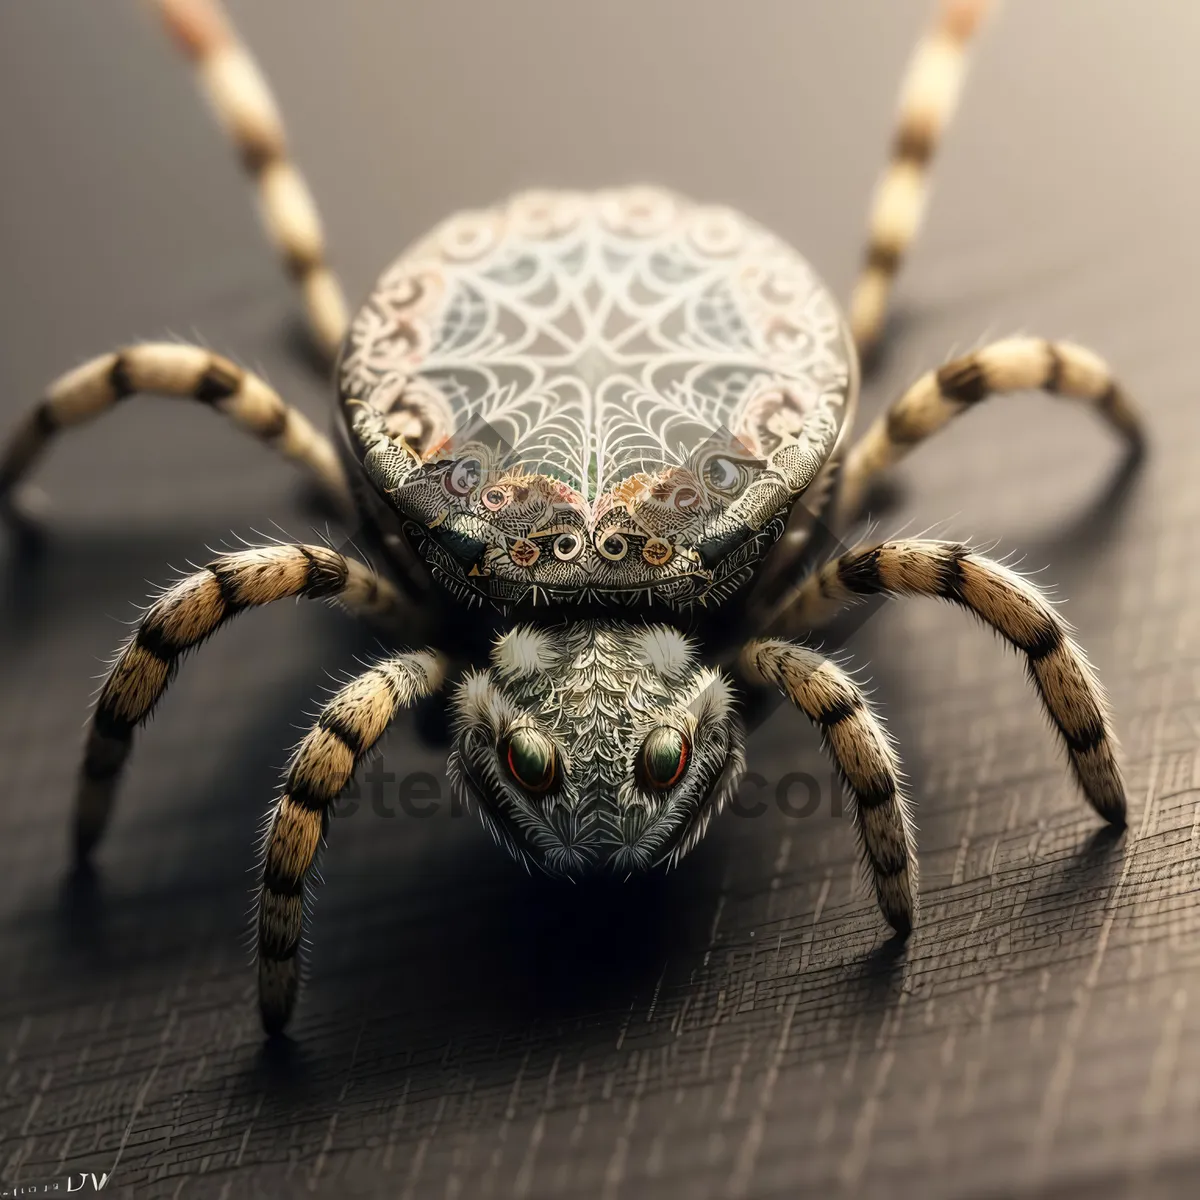 Picture of Creepy Crawly Arachnid Predator - The Barn Spider